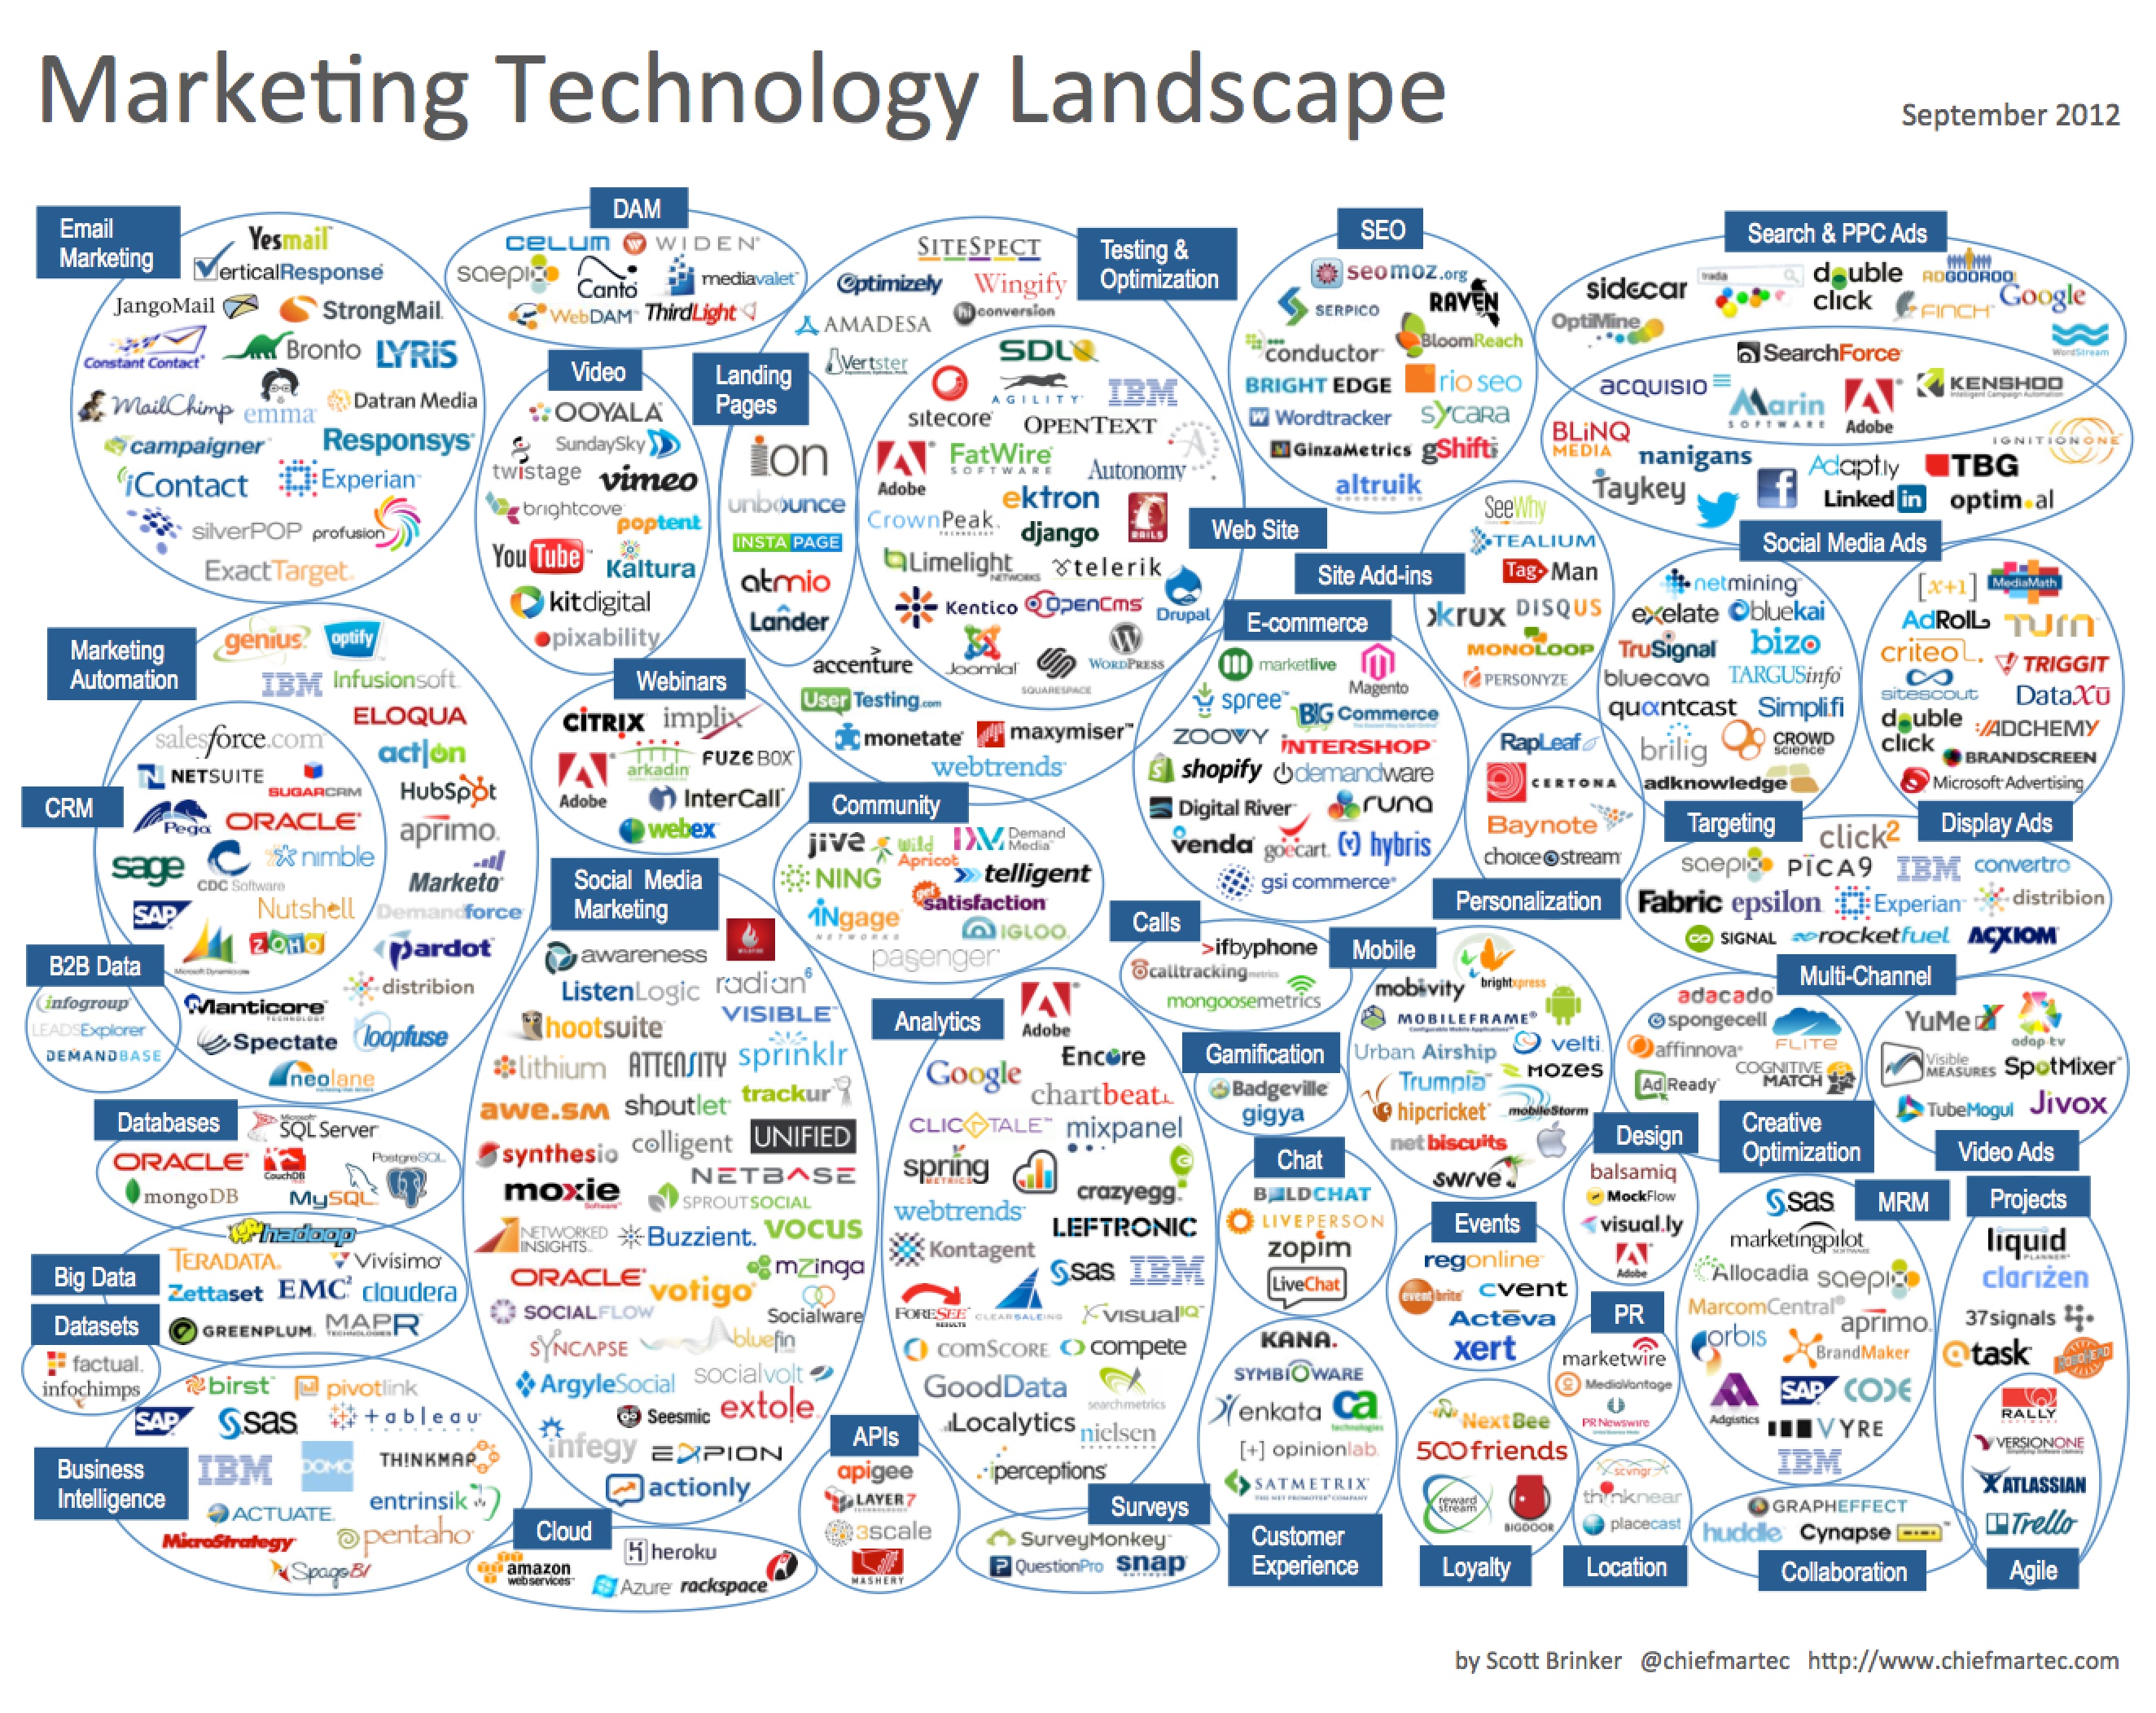 Marketing Technology Landscape 2012